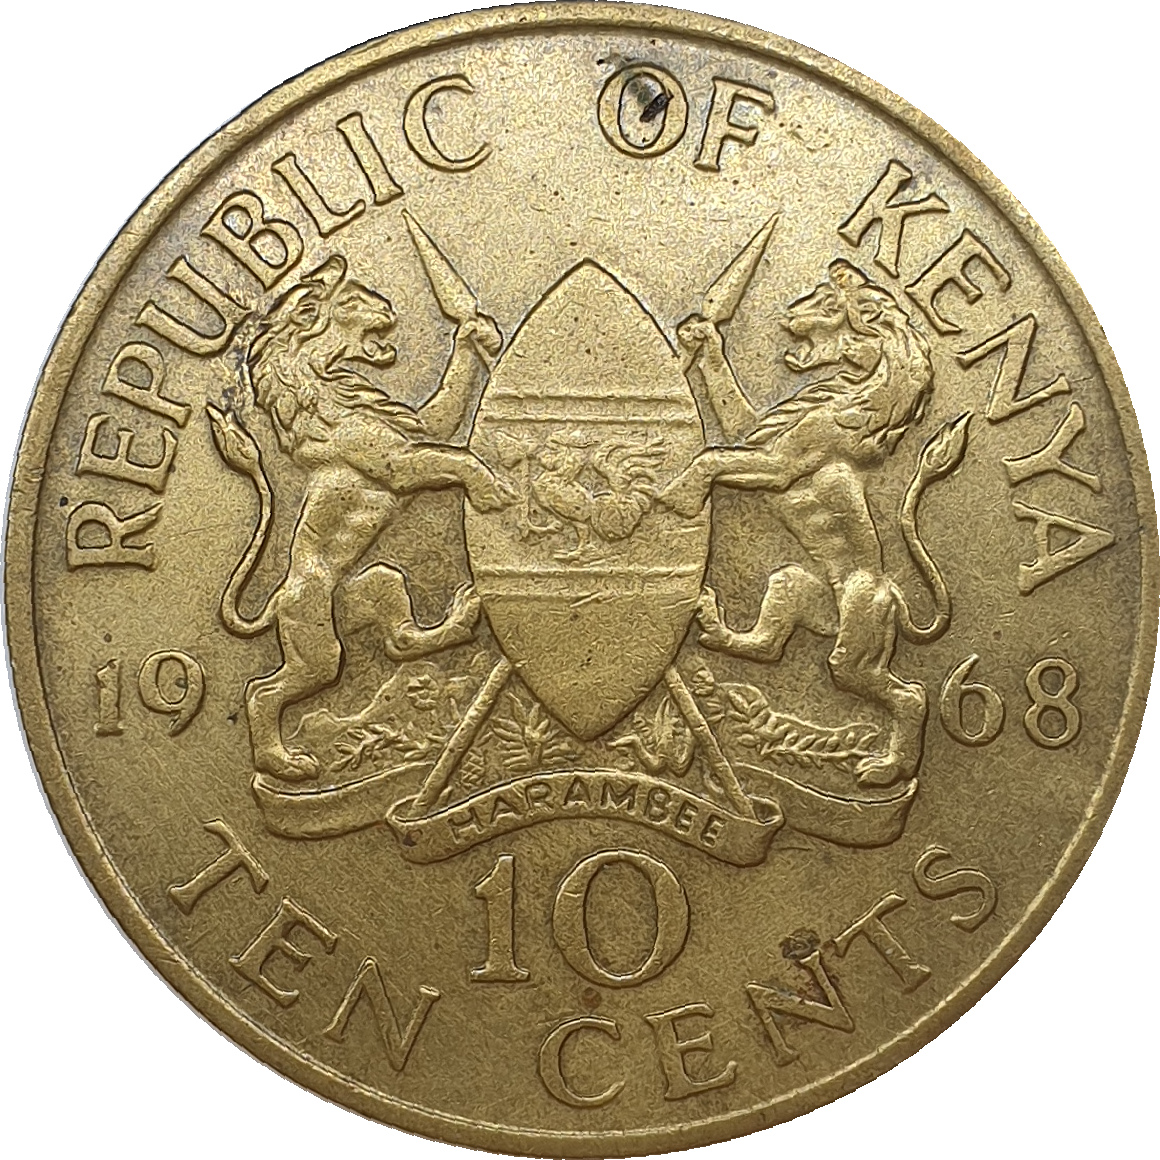 10 cents - Mzee Jomo Kenyatta - No legend